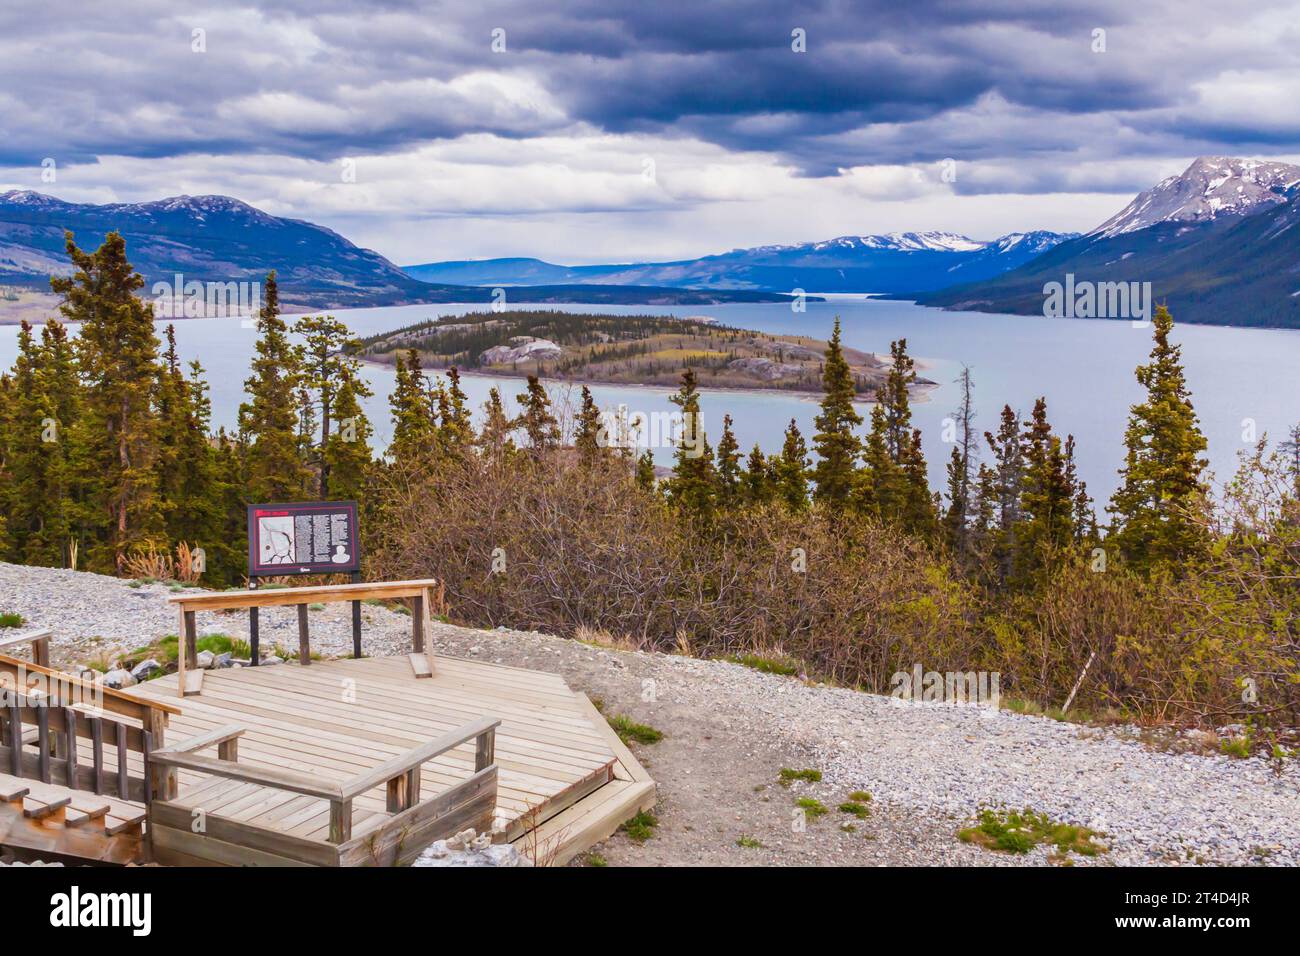 Bove Island und der windige Arm des Tagish Lake im Yukon Territory, Kanada. Der Windy Arm des Tagish Lake war einst Teil einer historischen Paddelroute. Stockfoto